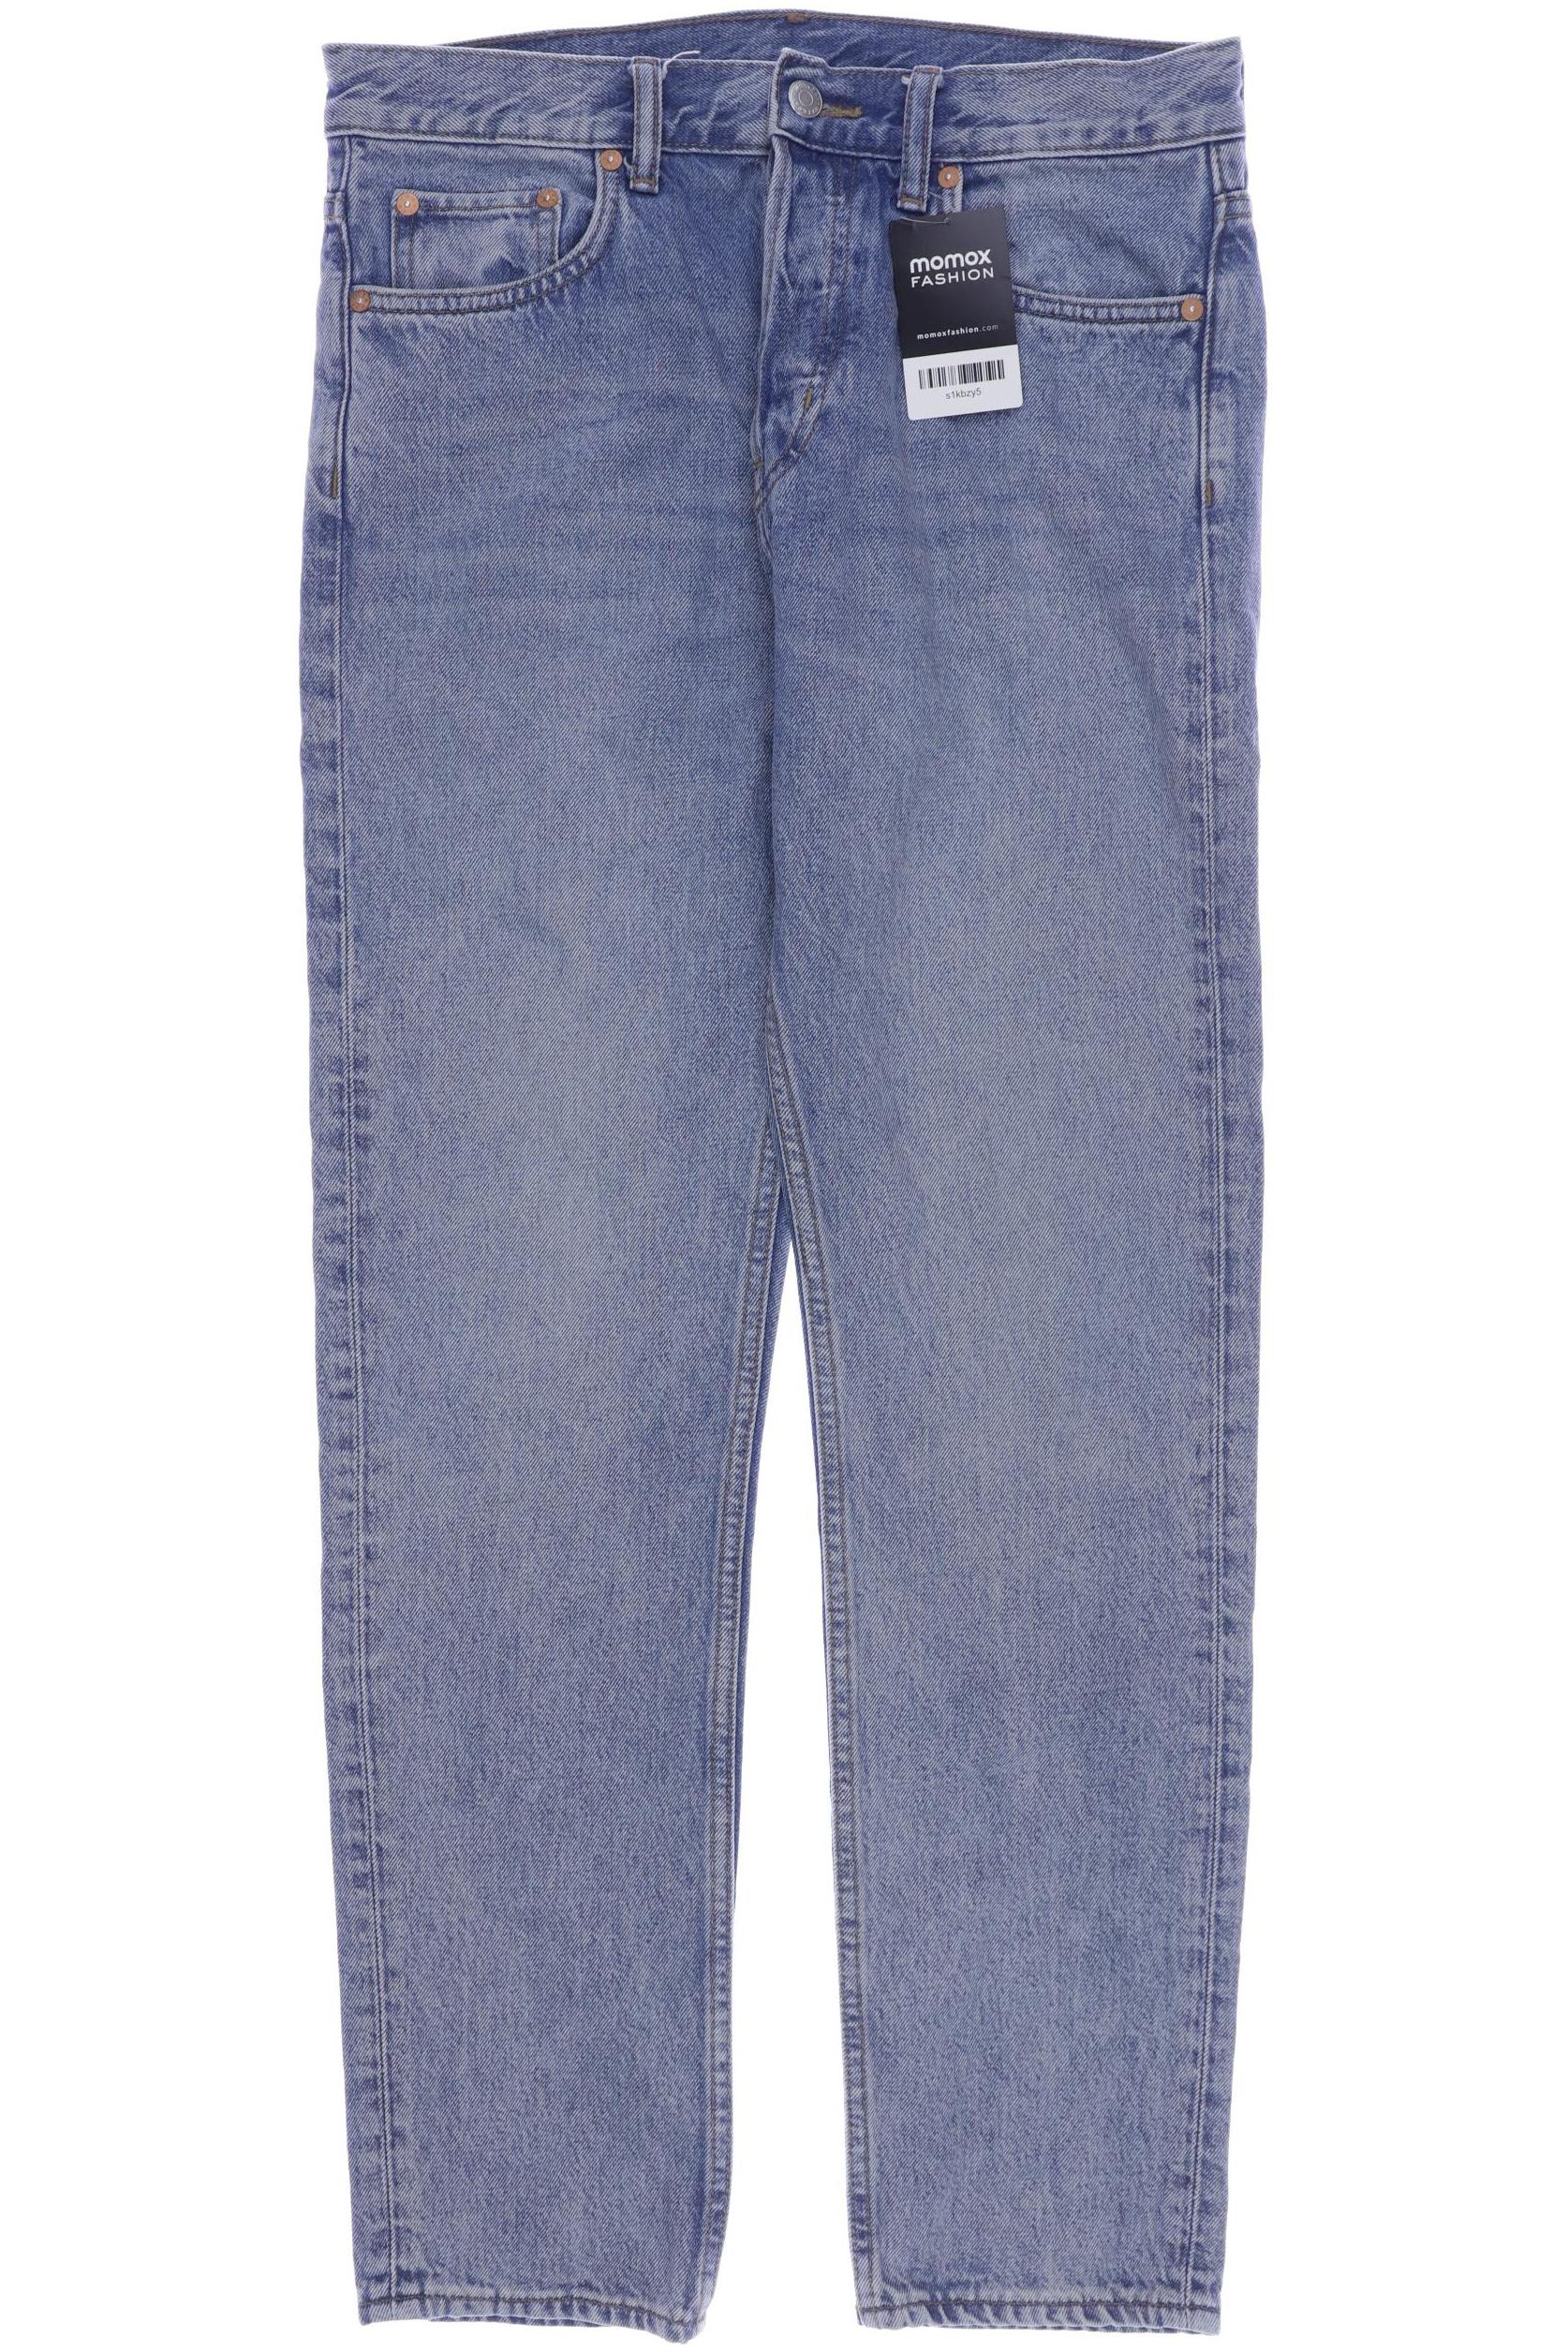 Weekday Herren Jeans, blau, Gr. 44 von Weekday